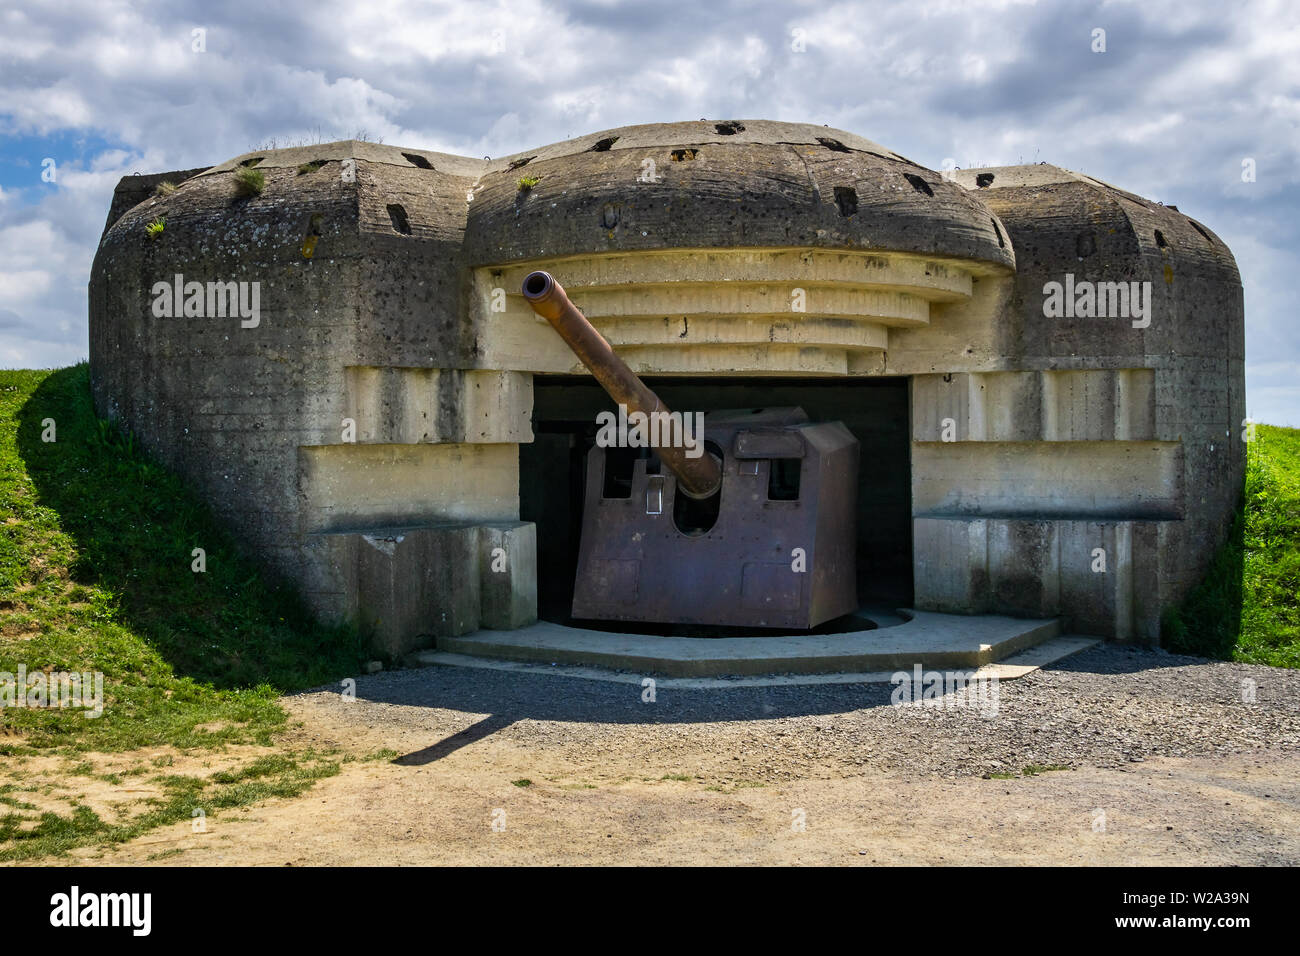 La Seconde Guerre mondiale, l'artillerie allemande au reste de la Batterie de Longues-sur-Mer, la fortification du mur de l'Atlantique, Normandie, France. Banque D'Images